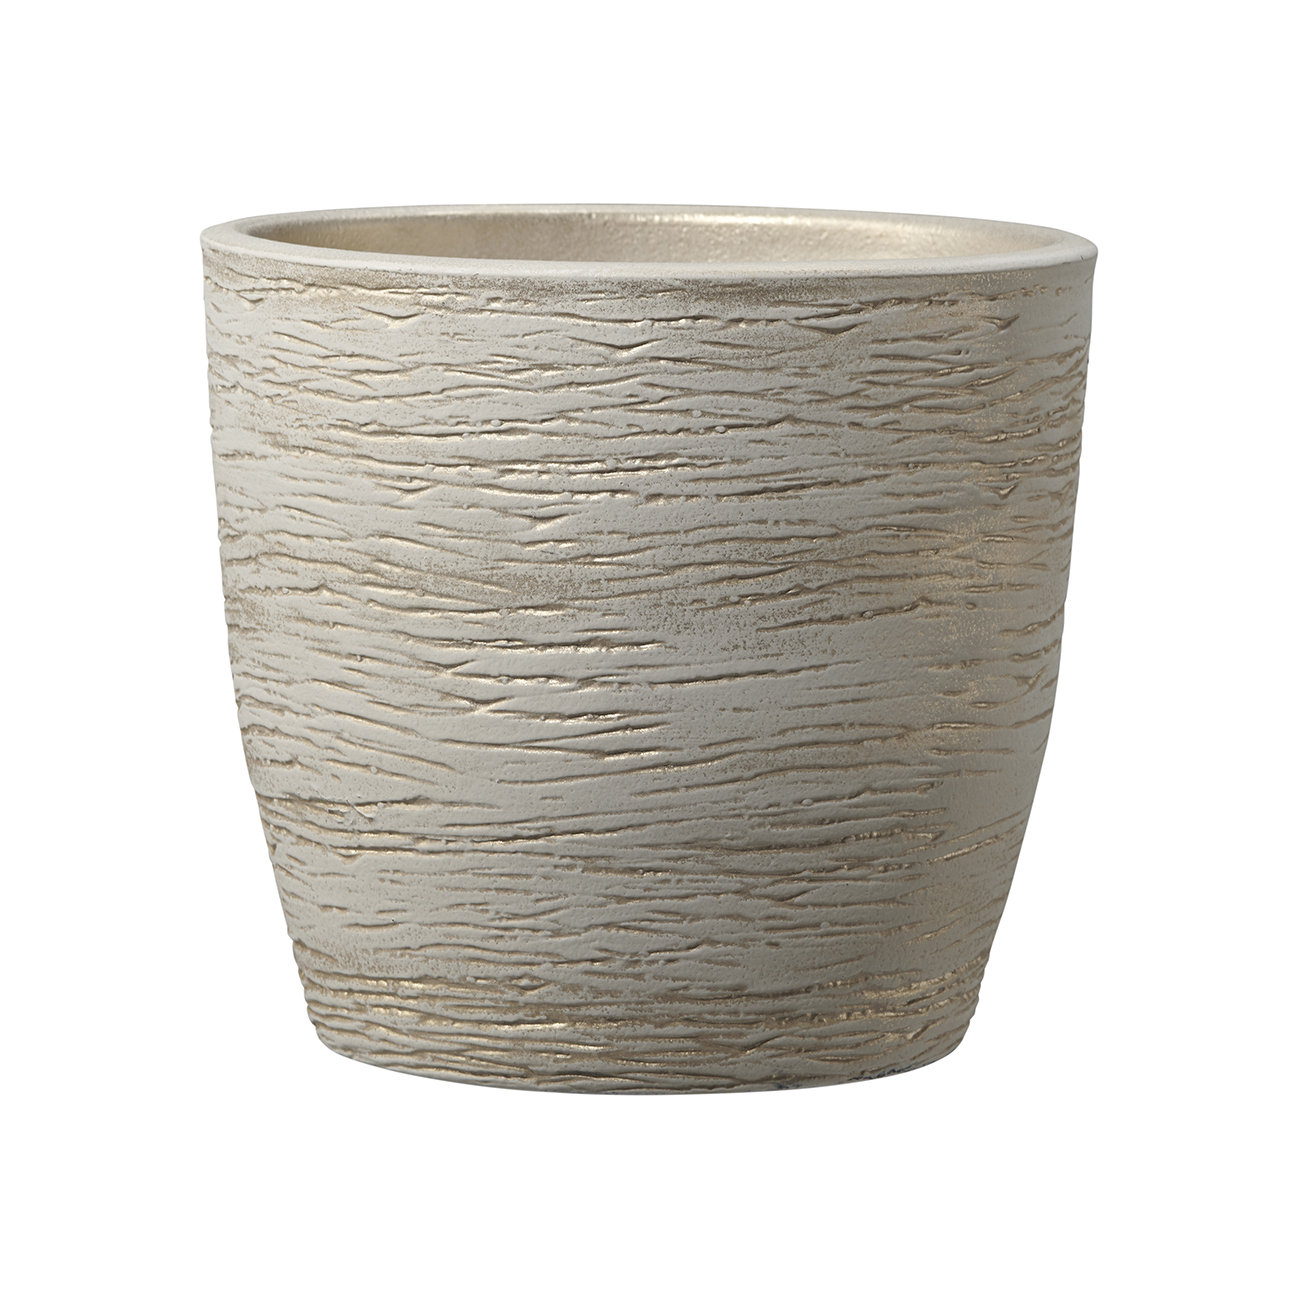 Ghiveci SK Pescara, ceramica, crem, diametru 12 cm, 10 cm 10 cm